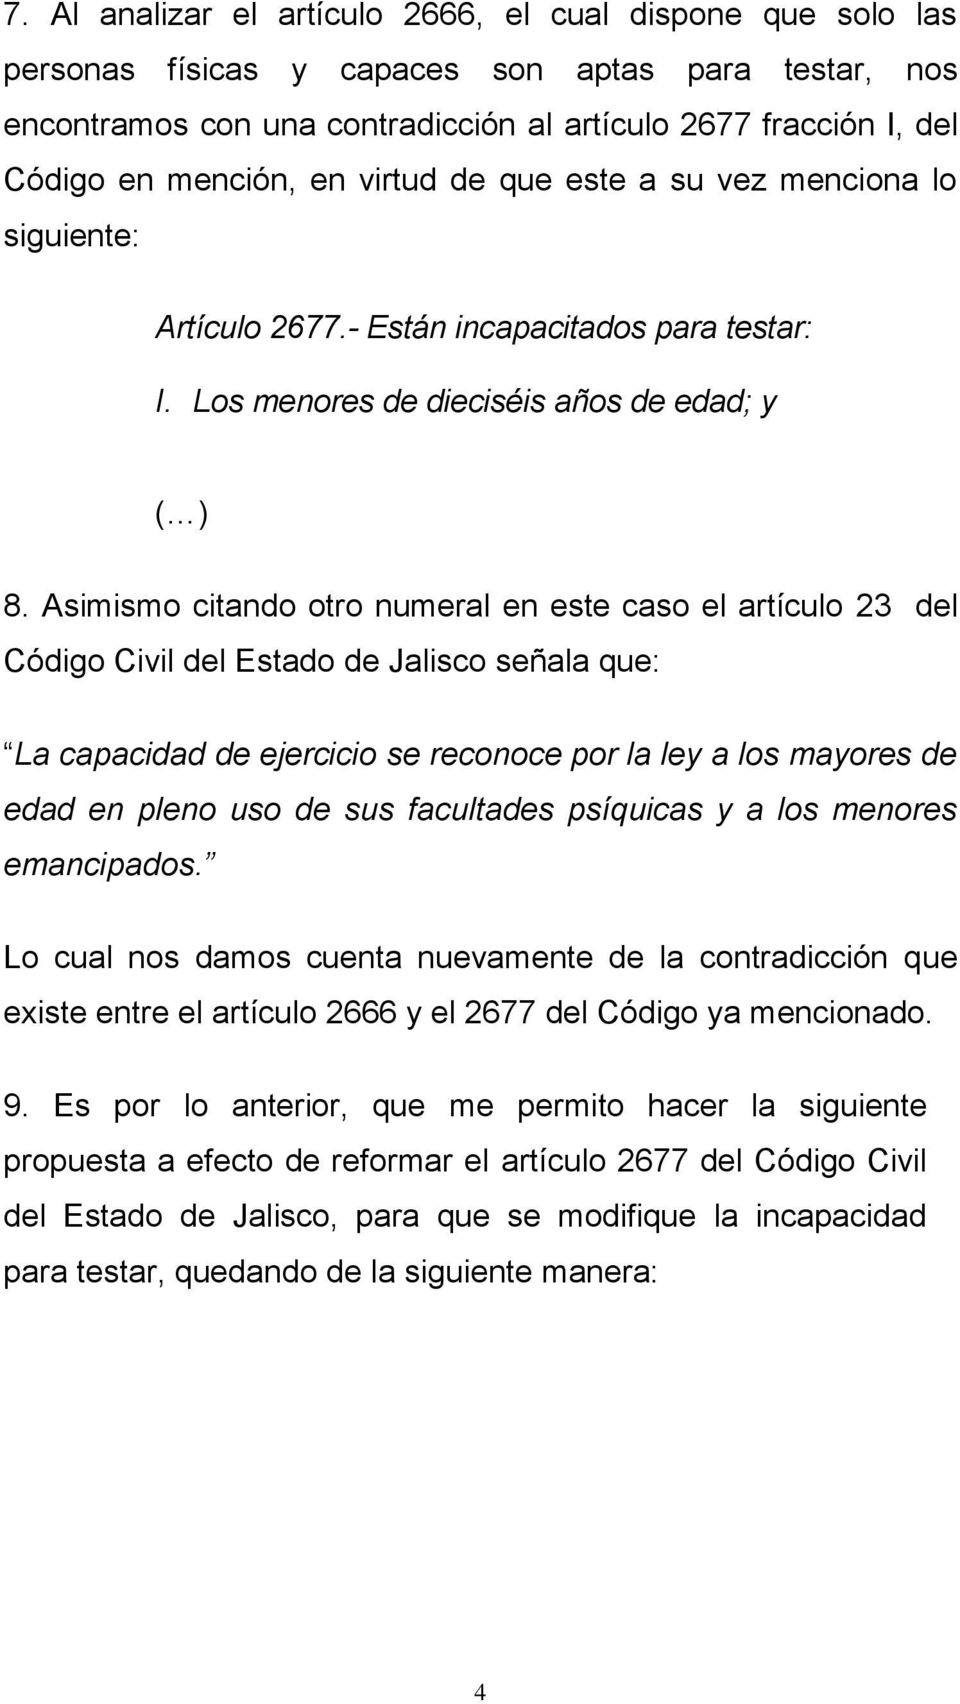 Asimismo citando otro numeral en este caso el artículo 23 del Código Civil del Estado de Jalisco señala que: La capacidad de ejercicio se reconoce por la ley a los mayores de edad en pleno uso de sus